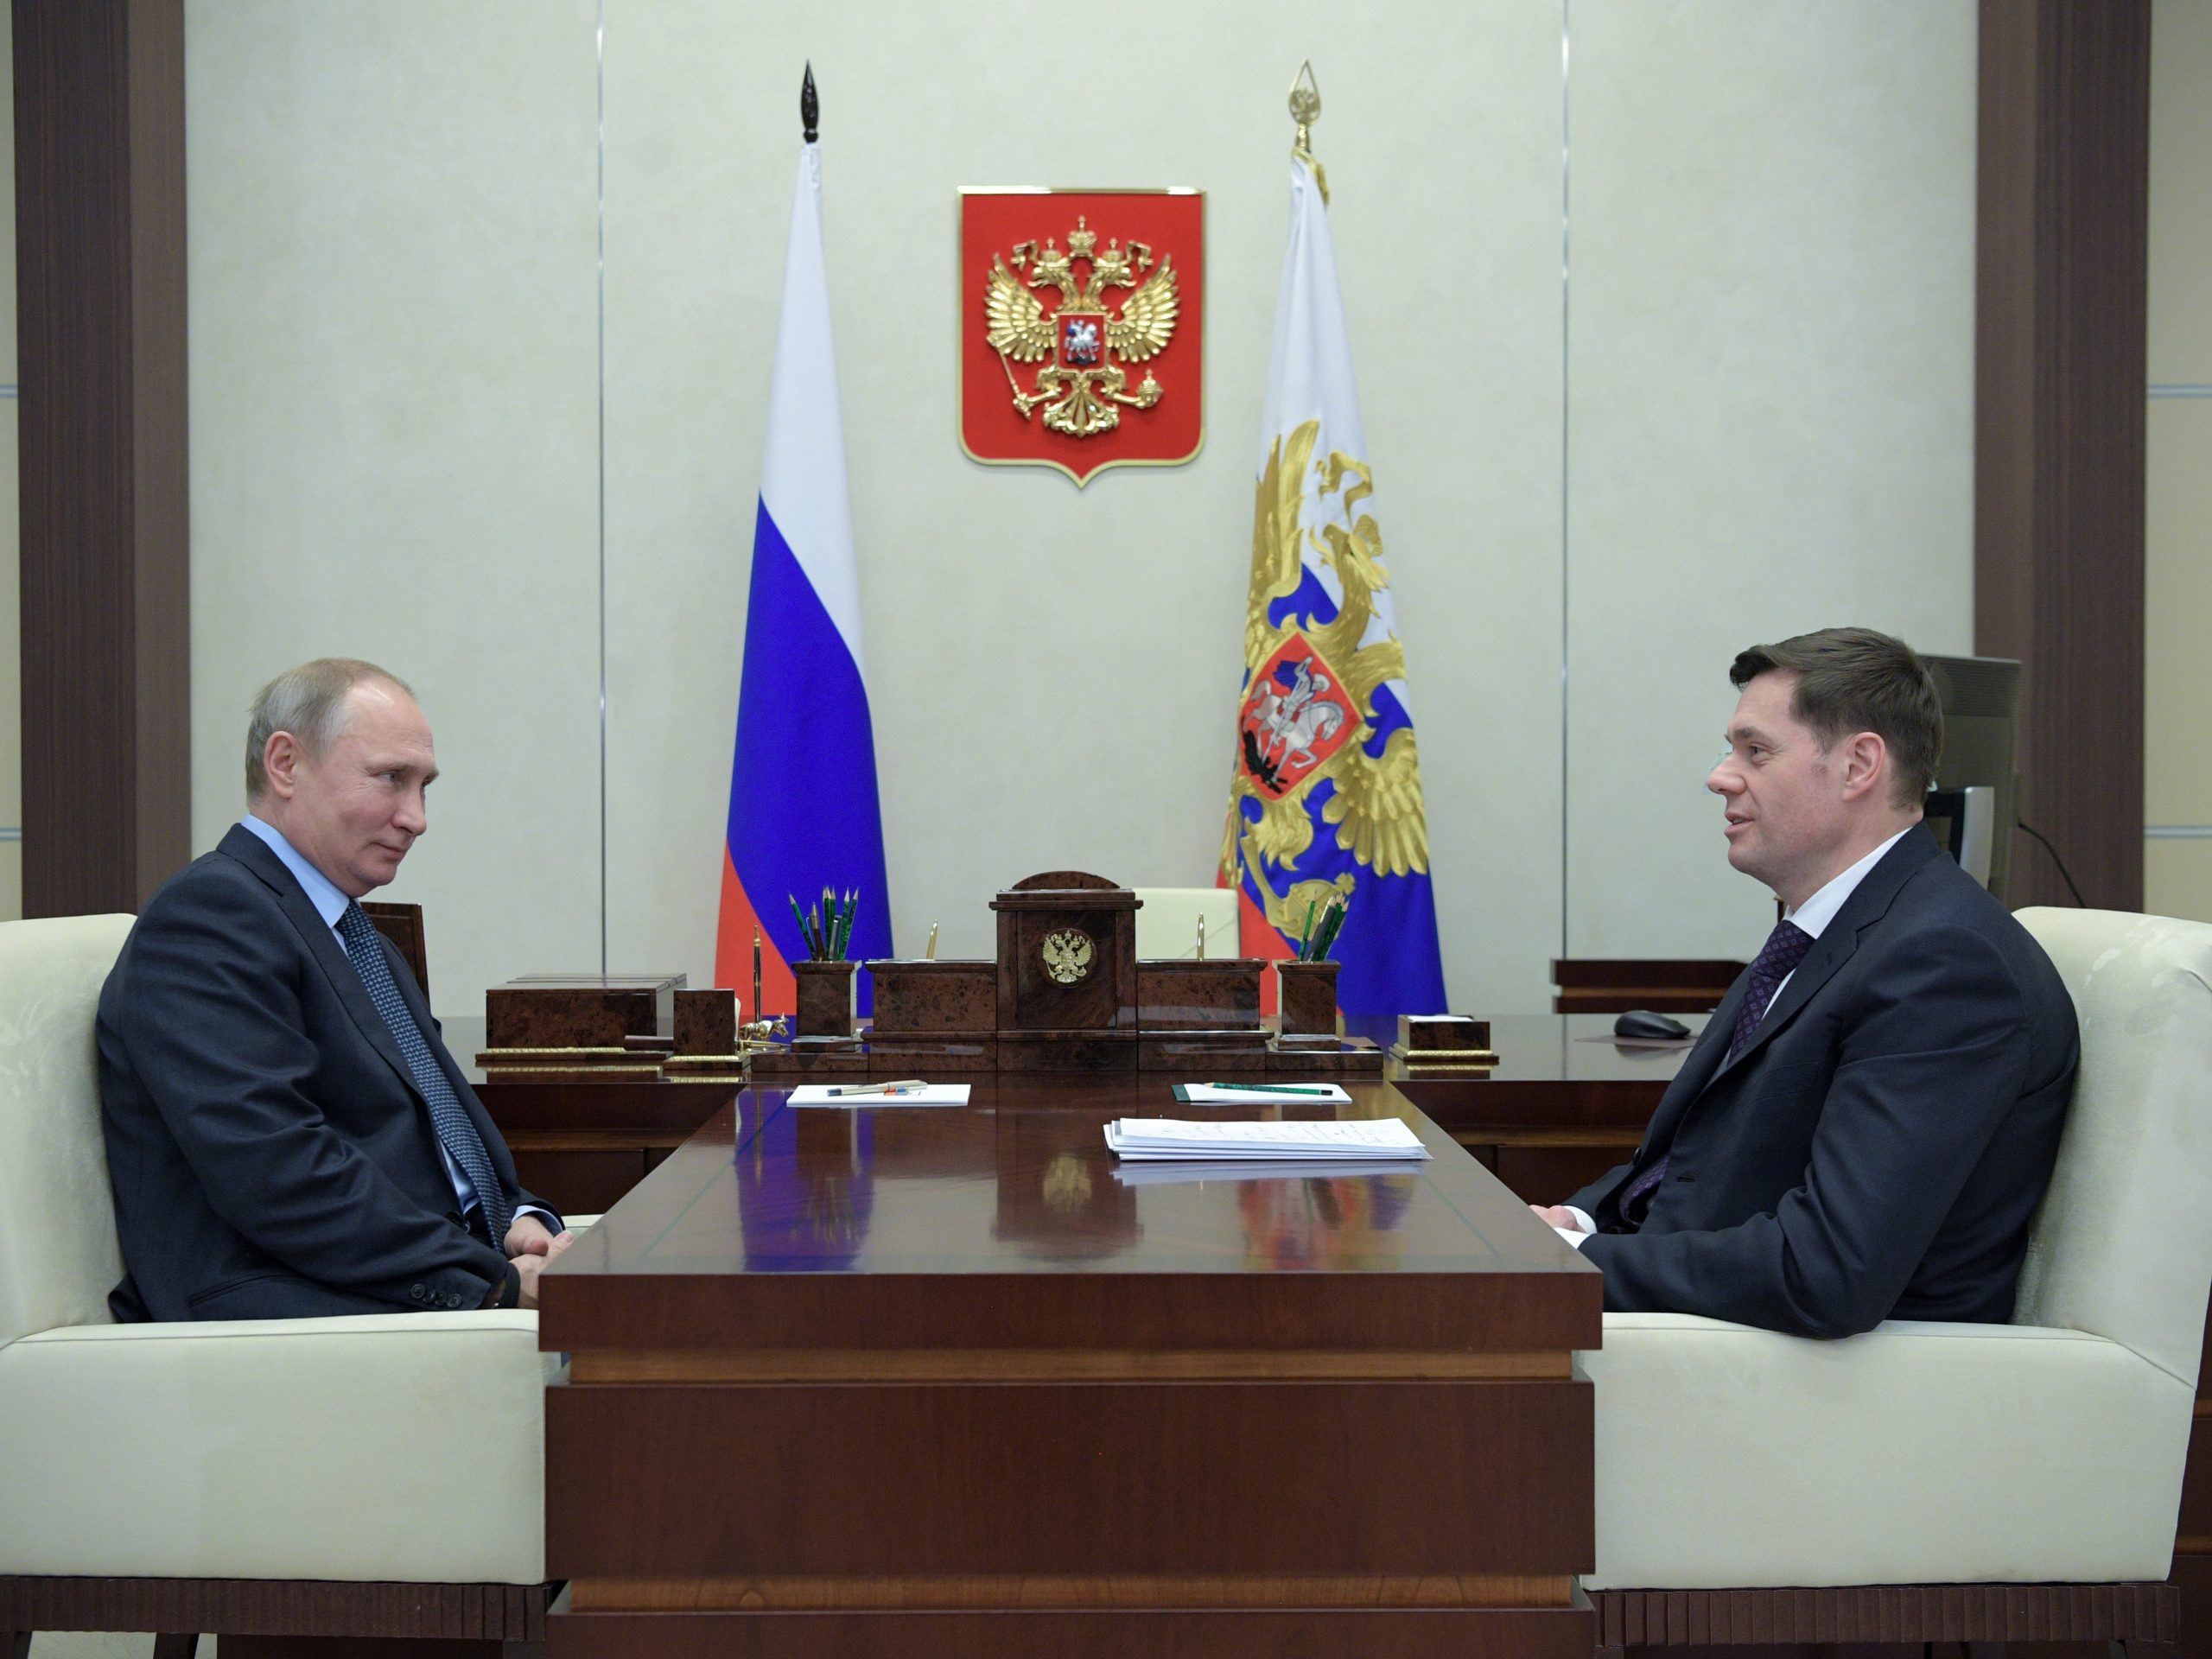 De Russische president Vladimir Poetin (L) en Severstal-bestuursvoorzitter Alexei Mordasjov tijdens een vergadering in 2018 in Moskou.